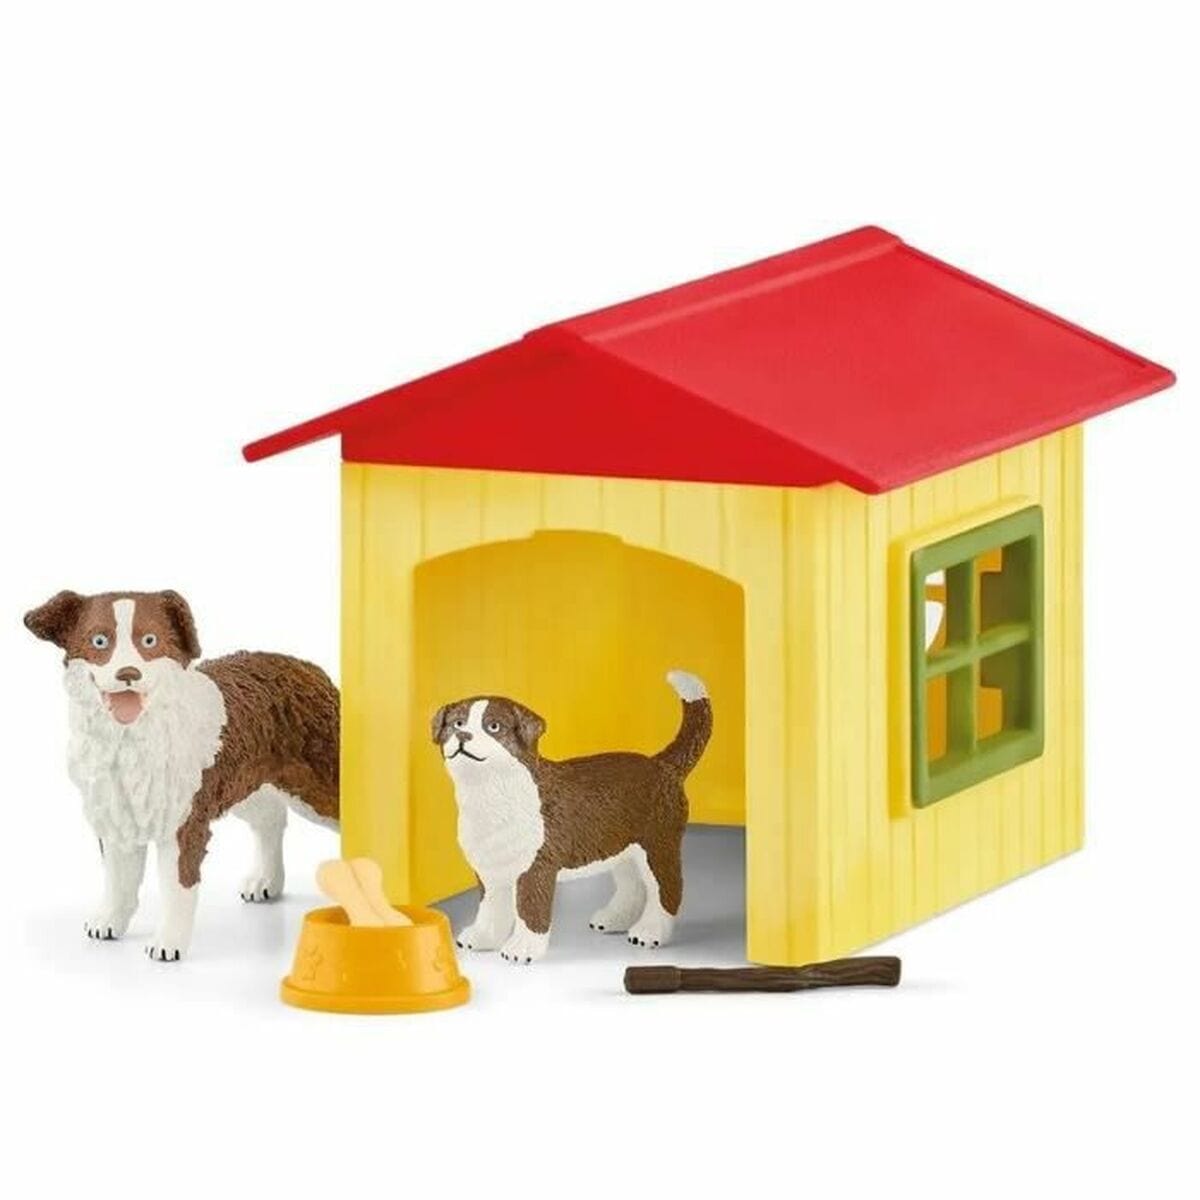 Schleich Spielzeug | Kostüme > Spielzeug und Spiele > Weiteres spielzeug Playset Schleich Friendly Dog House